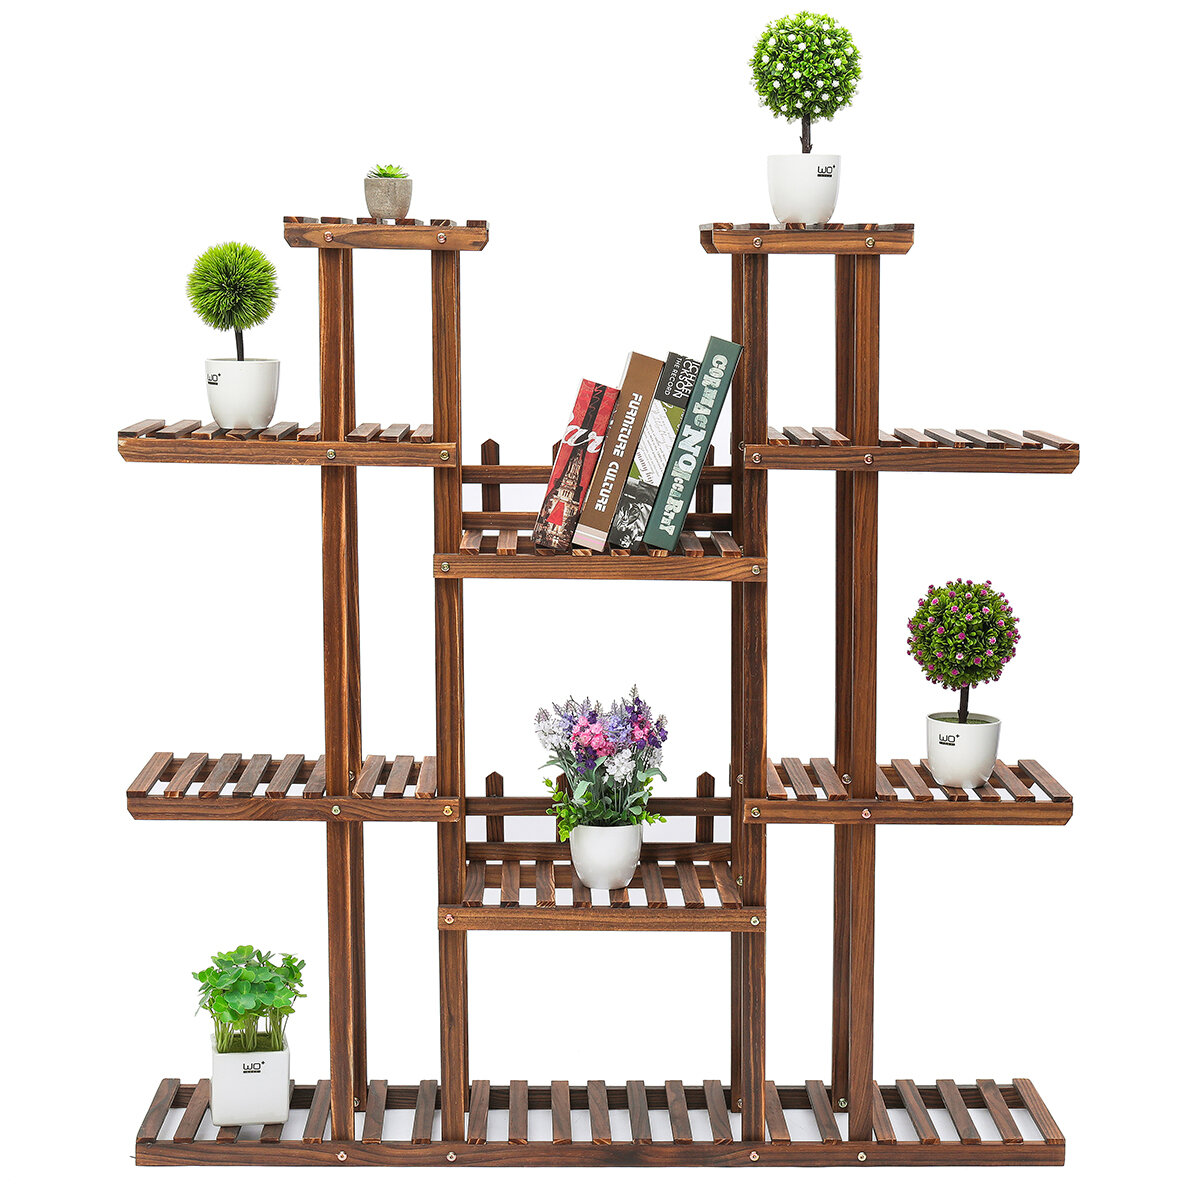 

Tooca 9 Tiers Wooden Plant Stand Flower Pots Organizer Shelf Display Rack Holder for Indoor Outdoor Patio Garden Corner